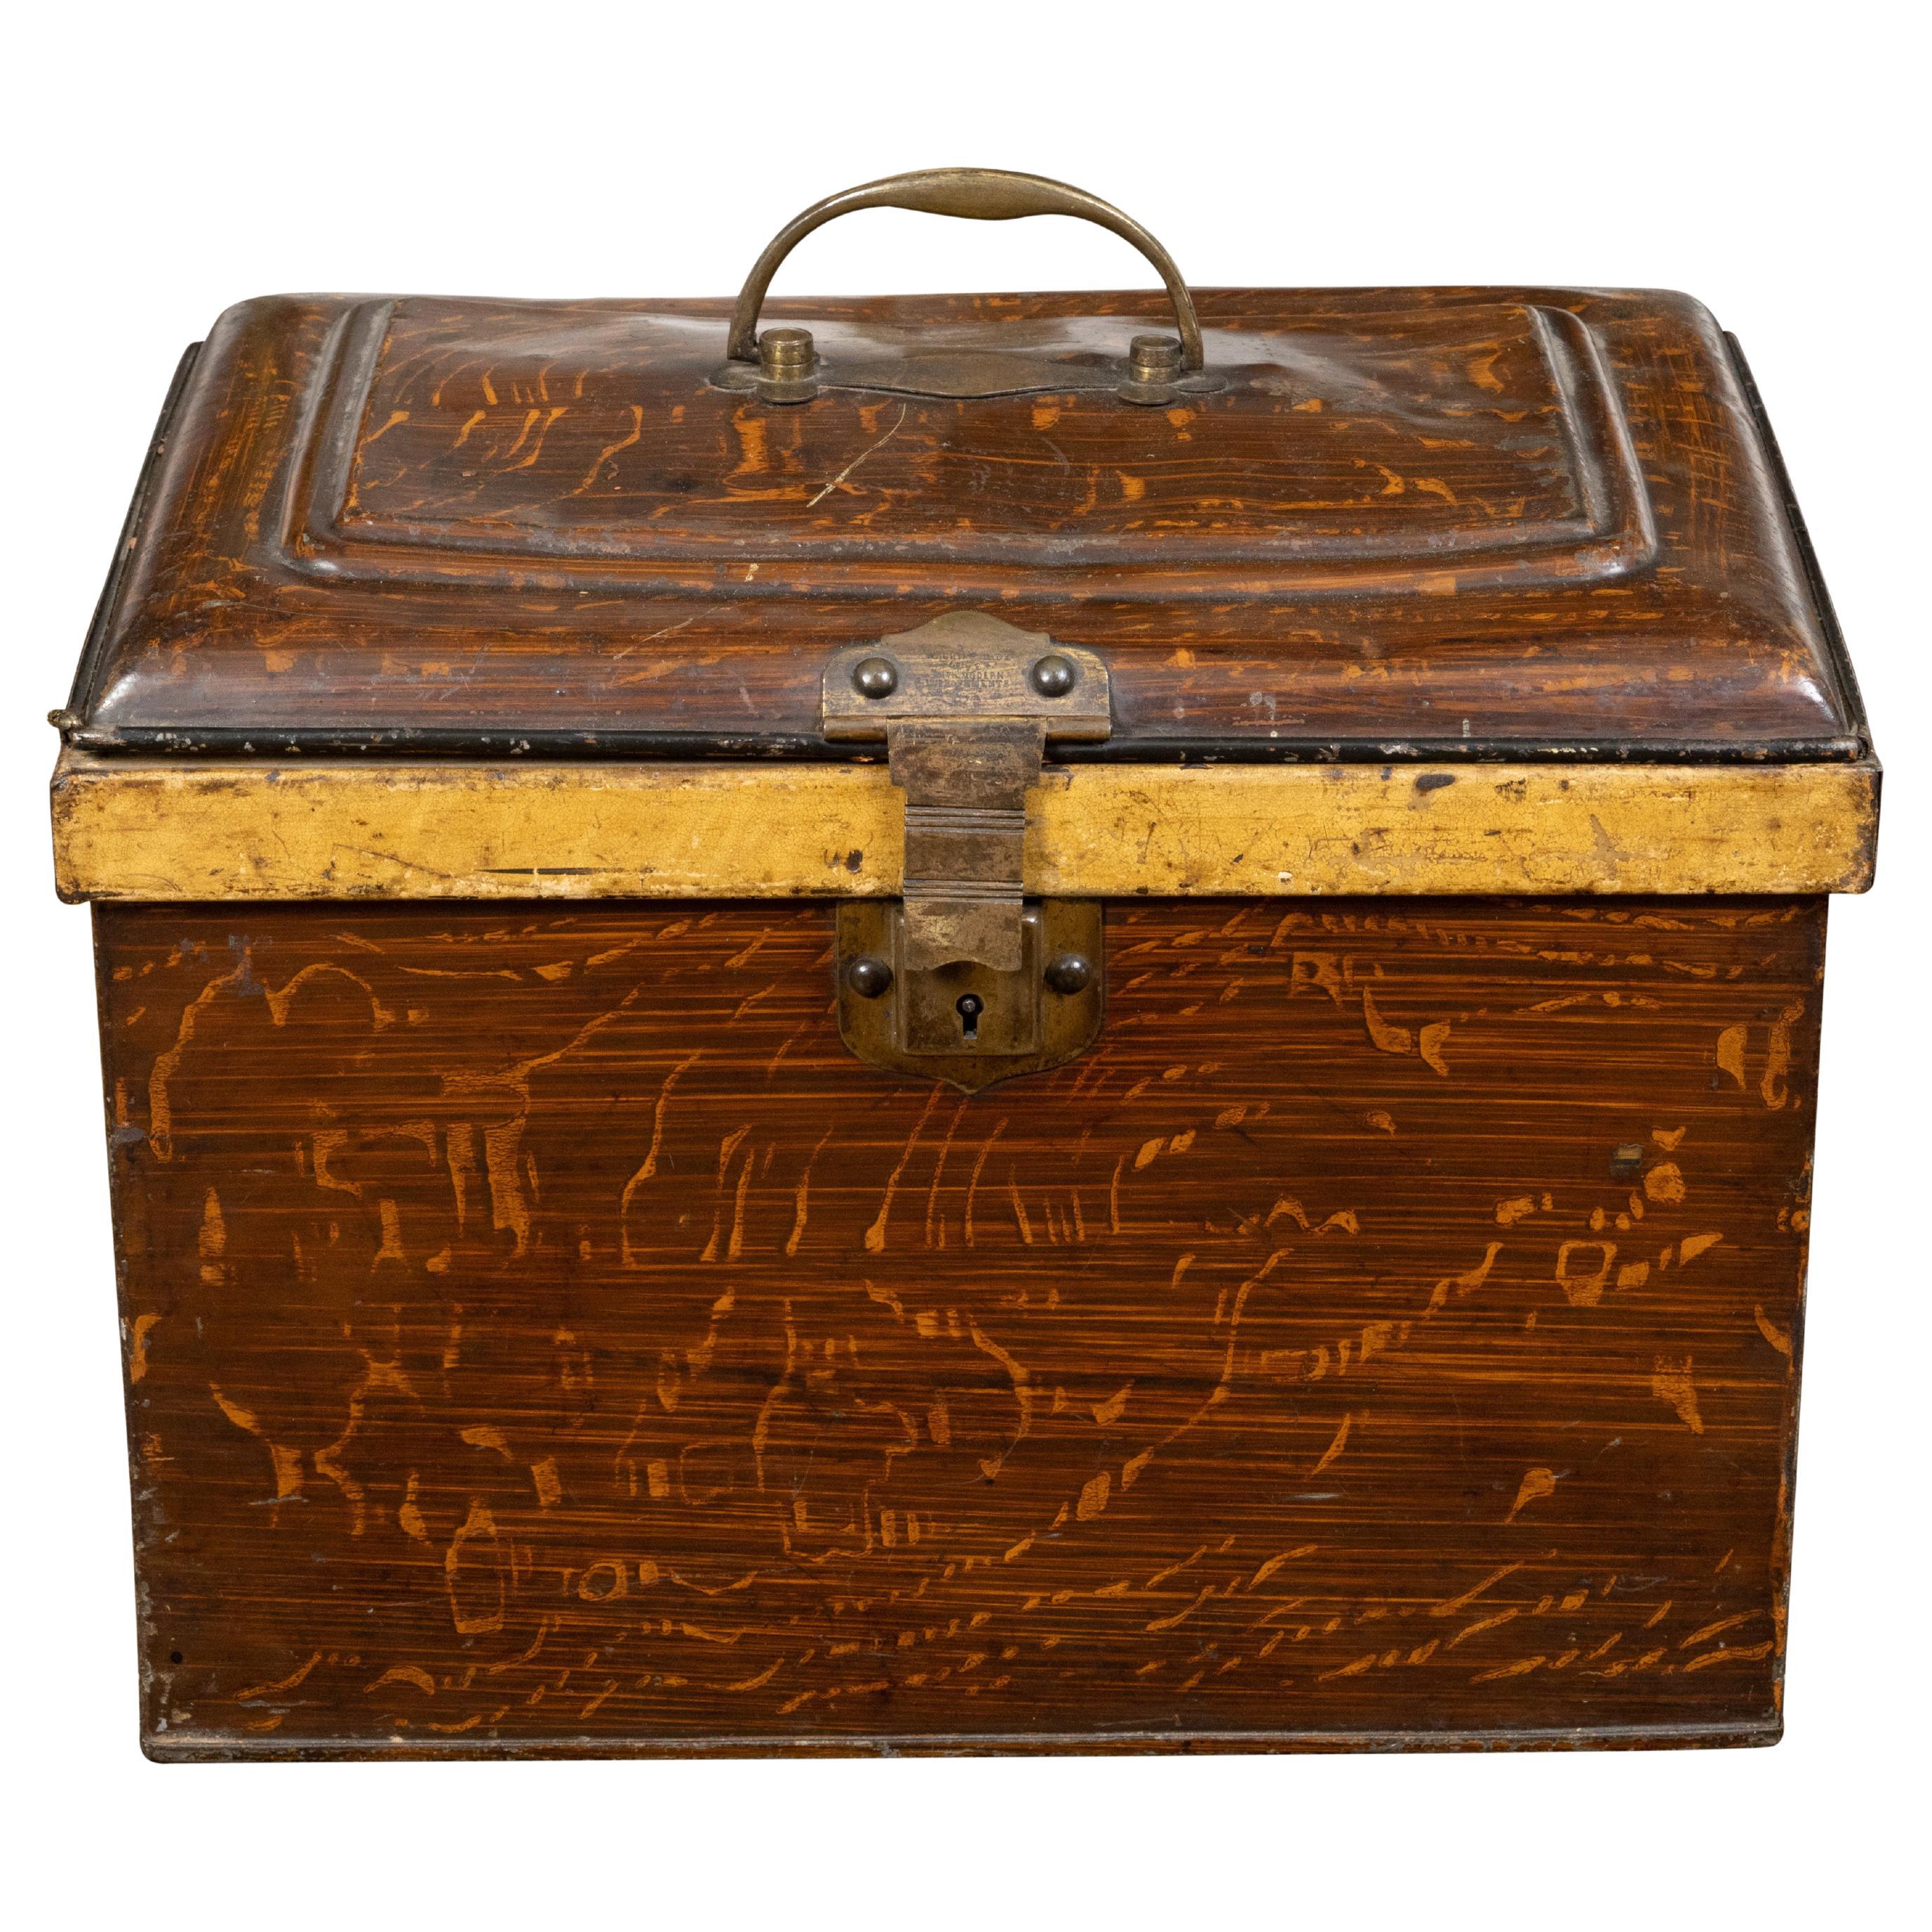 Boîte à charbon rustique peinte en bois des années 1890 avec finition de grain de bois et touches de ruban doré